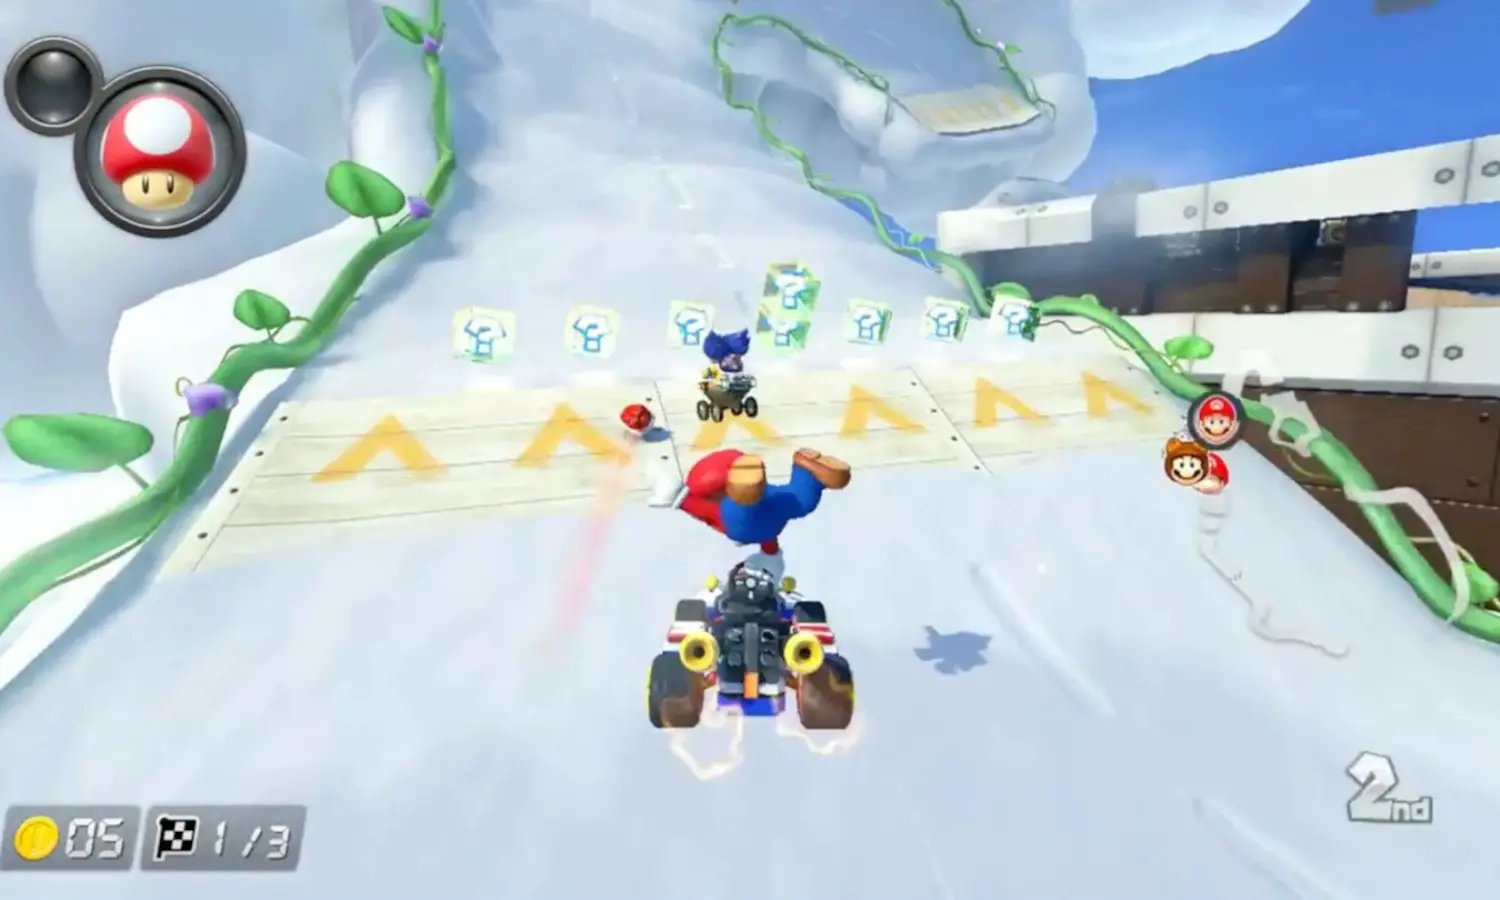 Mario Kart Tour (Game) - Giant Bomb